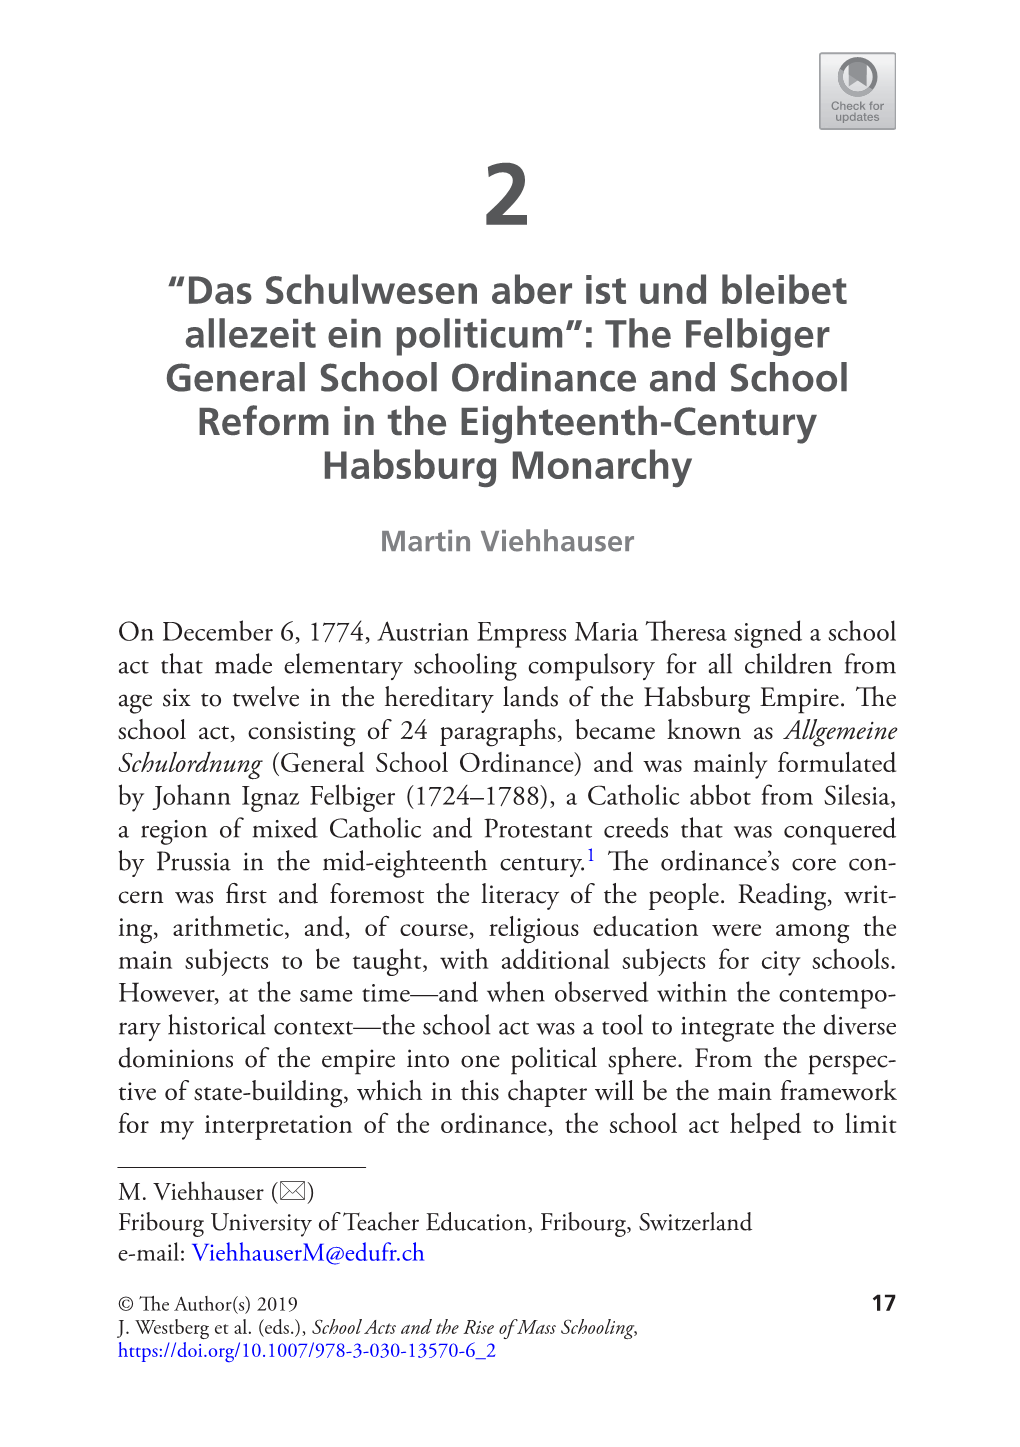 “Das Schulwesen Aber Ist Und Bleibet Allezeit Ein Politicum”: the Felbiger General School Ordinance and School Reform in the Eighteenth-Century Habsburg Monarchy